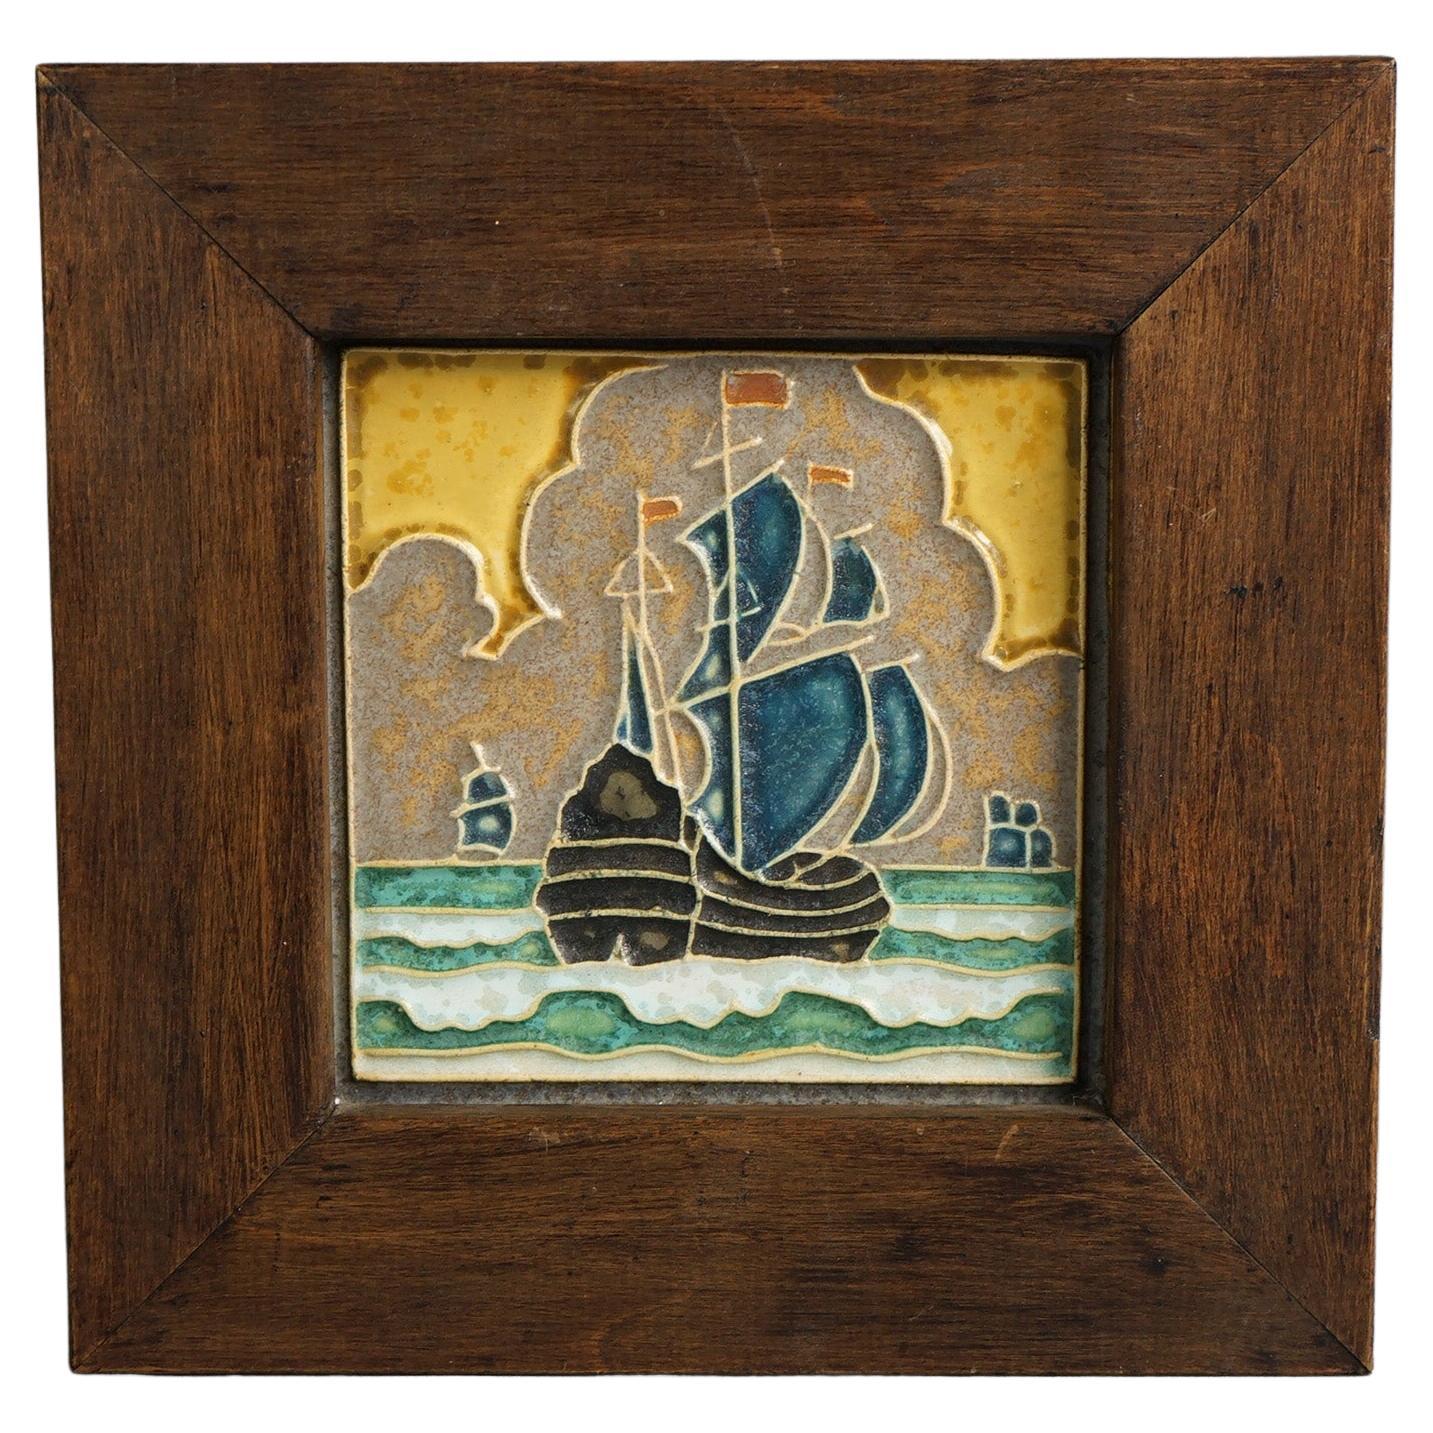 Antique Delft Arts & Crafts Framed Pottery Tile, Seascape & Ship, Signed C1920